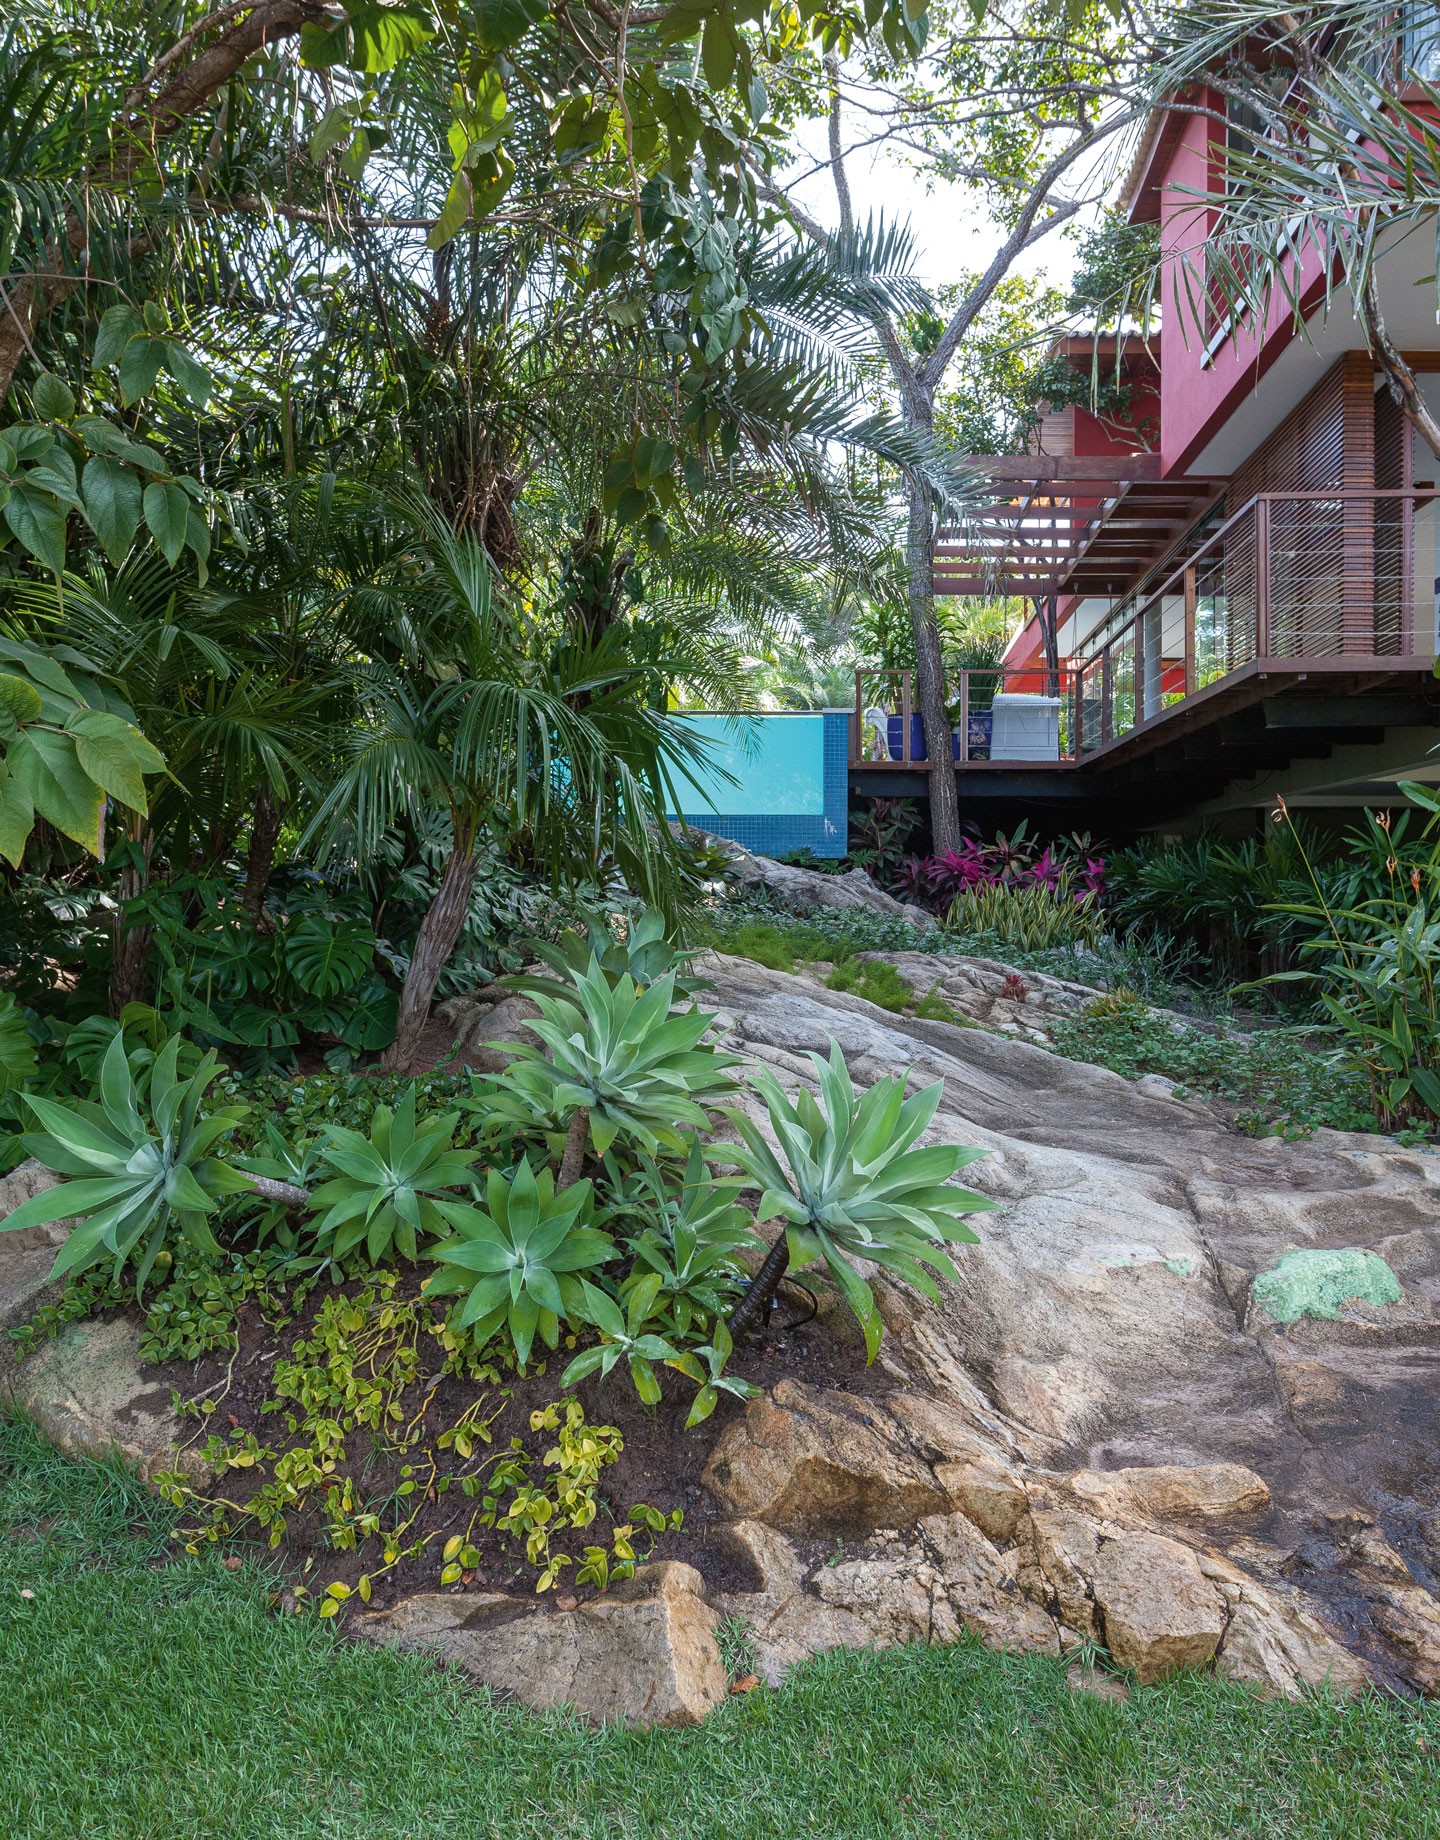 Casa de férias na Bahia é abraçada pela natureza do entorno (Foto: Tuca Reinés/divulgação)